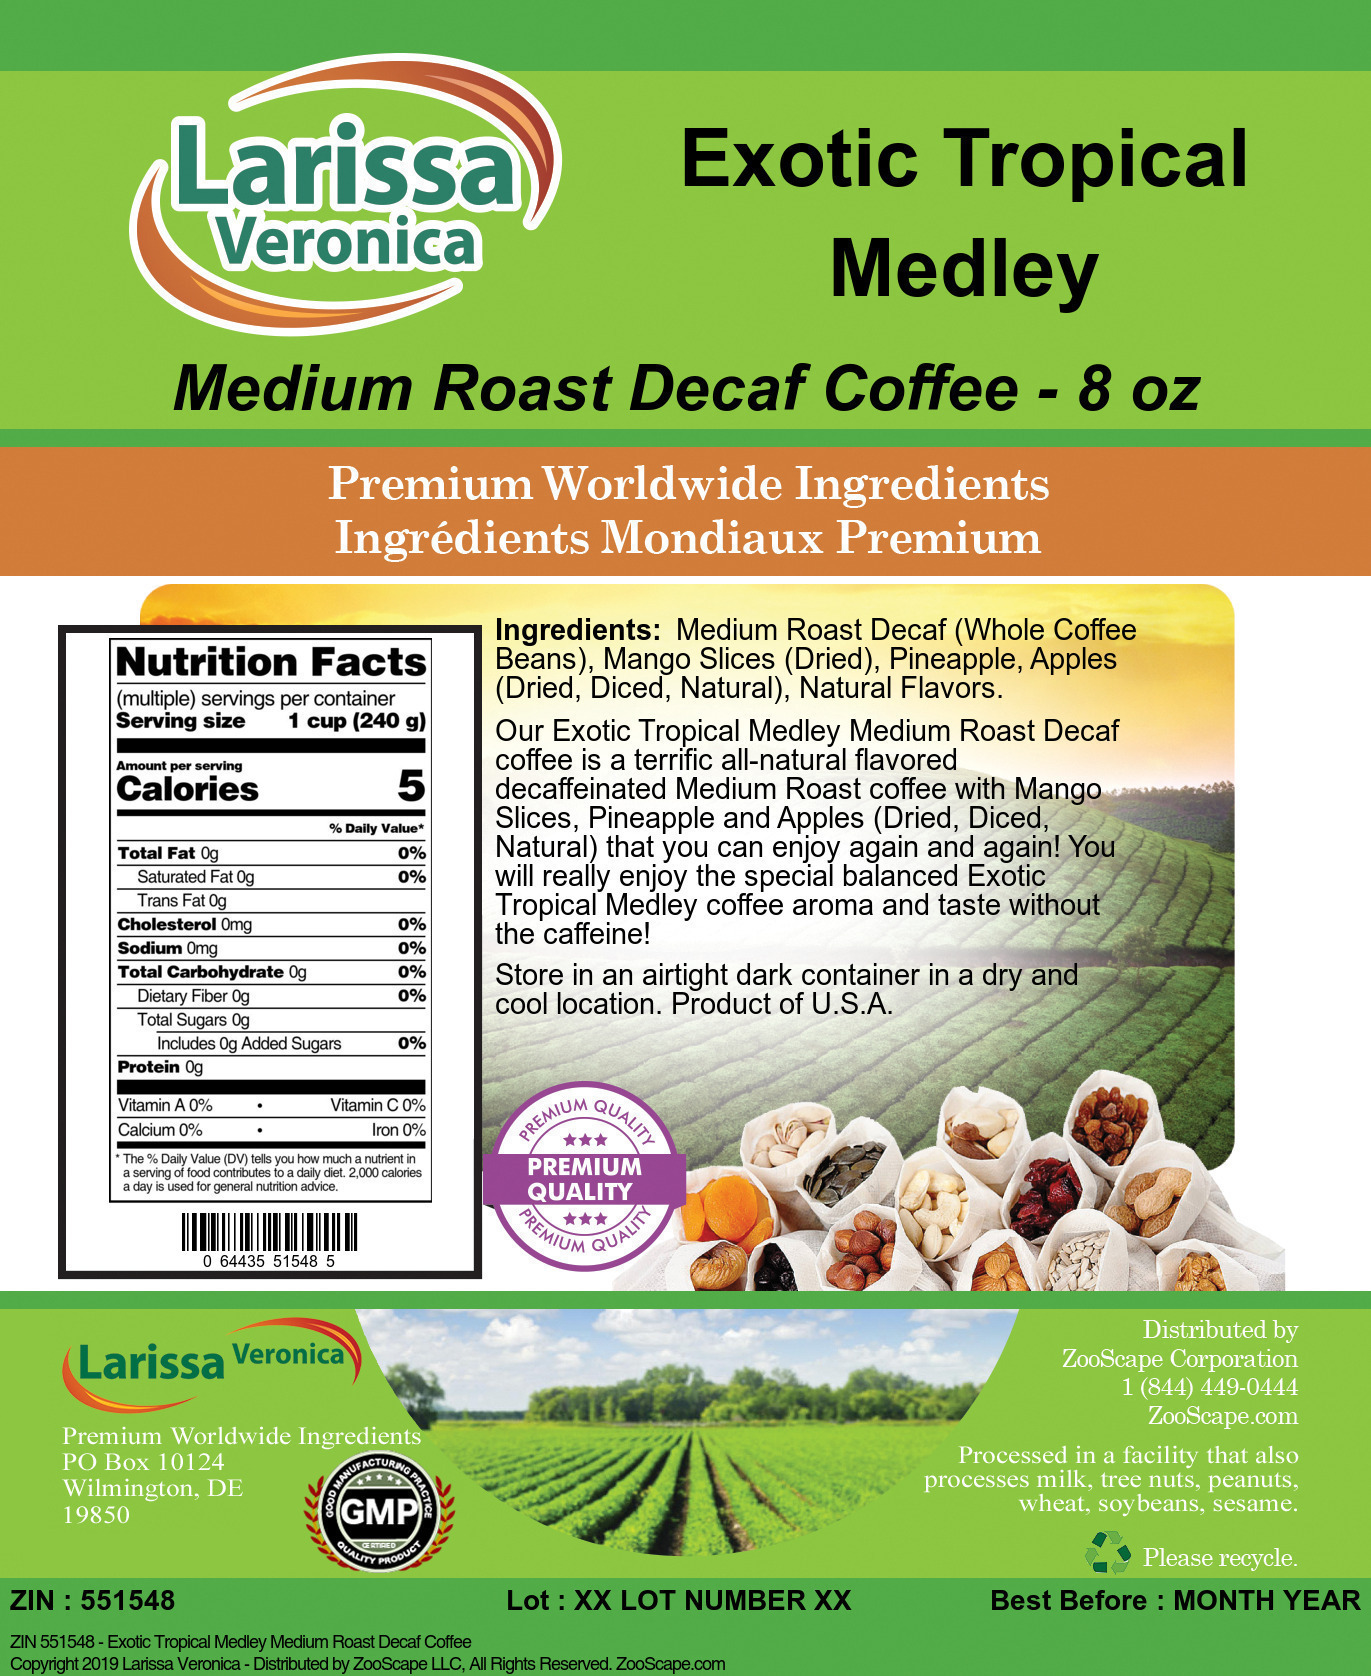 Exotic Tropical Medley Medium Roast Decaf Coffee - Label